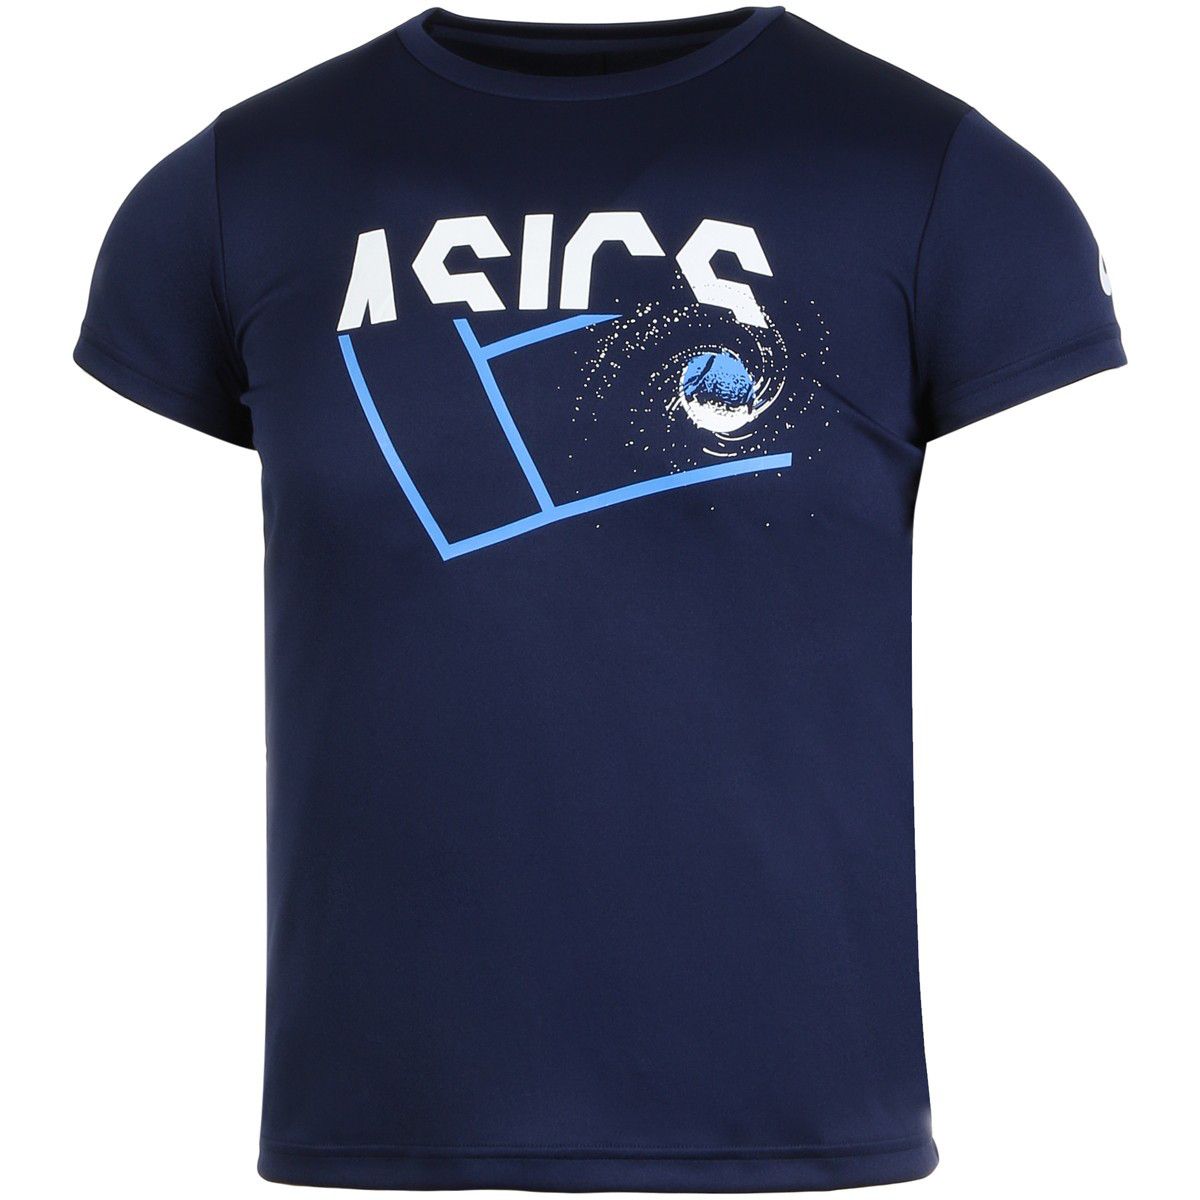 Asics GPX Boy's Tennis T-Shirt 2044A007-401